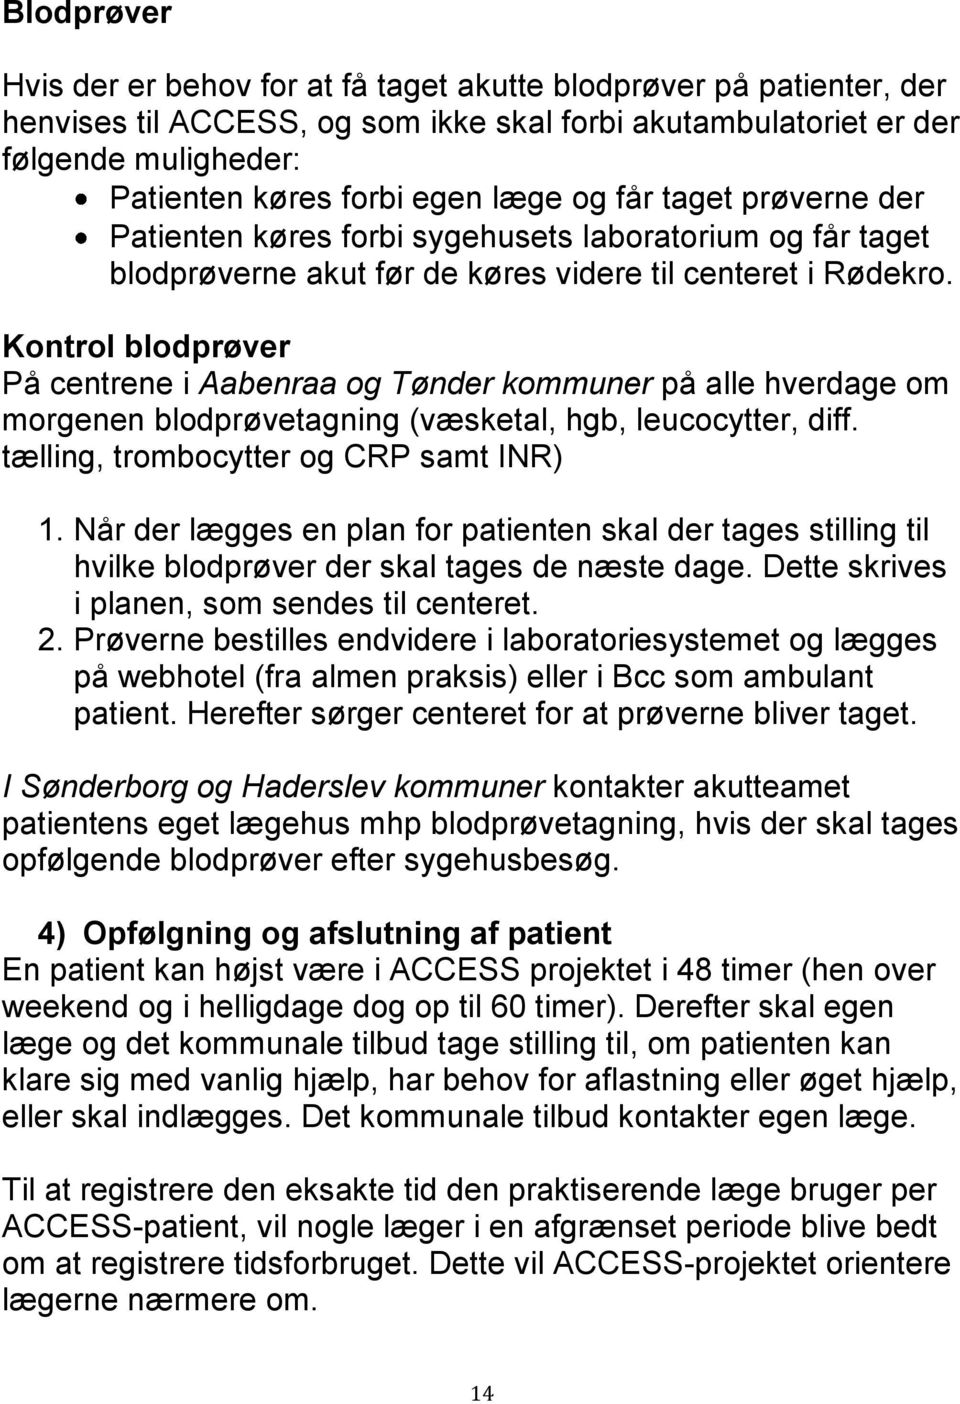 Kontrol blodprøver På centrene i Aabenraa og Tønder kommuner på alle hverdage om morgenen blodprøvetagning (væsketal, hgb, leucocytter, diff. tælling, trombocytter og CRP samt INR) 1.